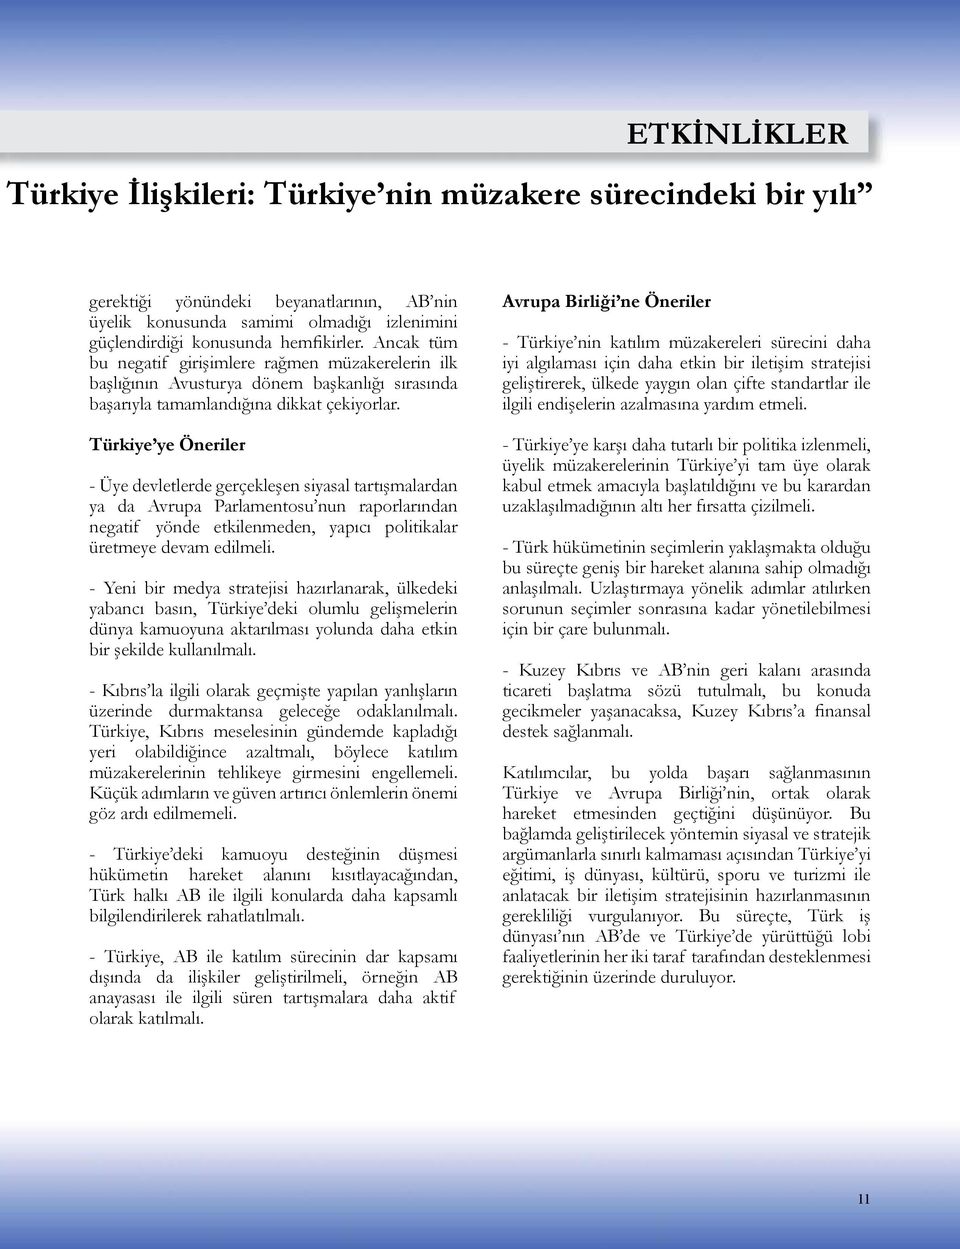 Türkiye ye Öneriler - Üye devletlerde gerçekleşen siyasal tartışmalardan ya da Avrupa Parlamentosu nun raporlarından negatif yönde etkilenmeden, yapıcı politikalar üretmeye devam edilmeli.